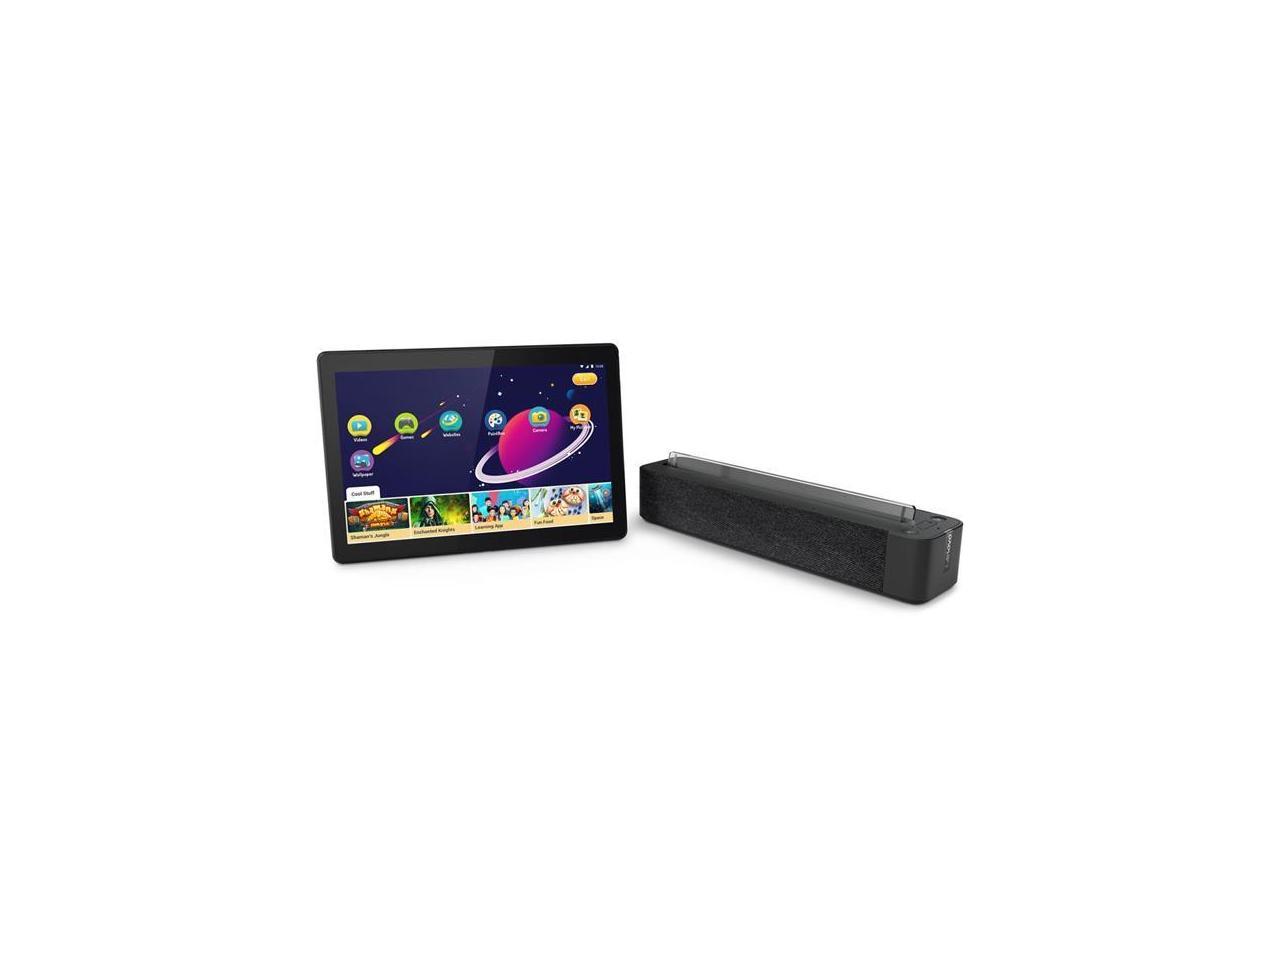 Lenovo Smart Tab M10 ZA510007US Qualcomm Snapdragon 429 2.00 GHz 2 GB Memory 16 GB Flash Storage 10.1" 1280 x 800 Tablet PC Android Oreo Slate Black